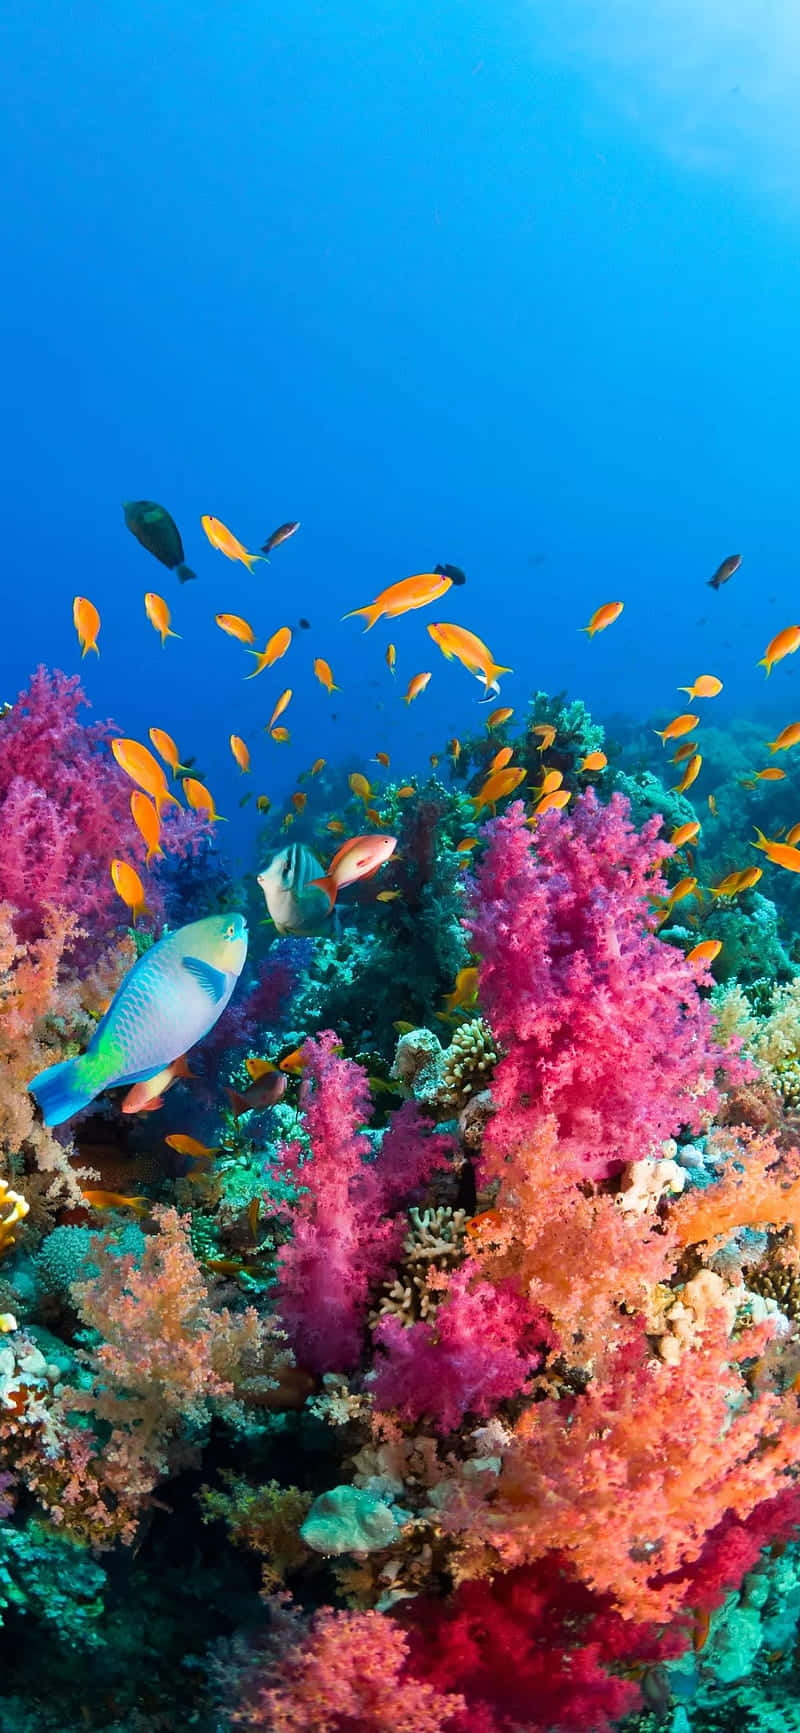 Unarrecife De Coral Colorido Con Peces Nadando Alrededor Fondo de pantalla